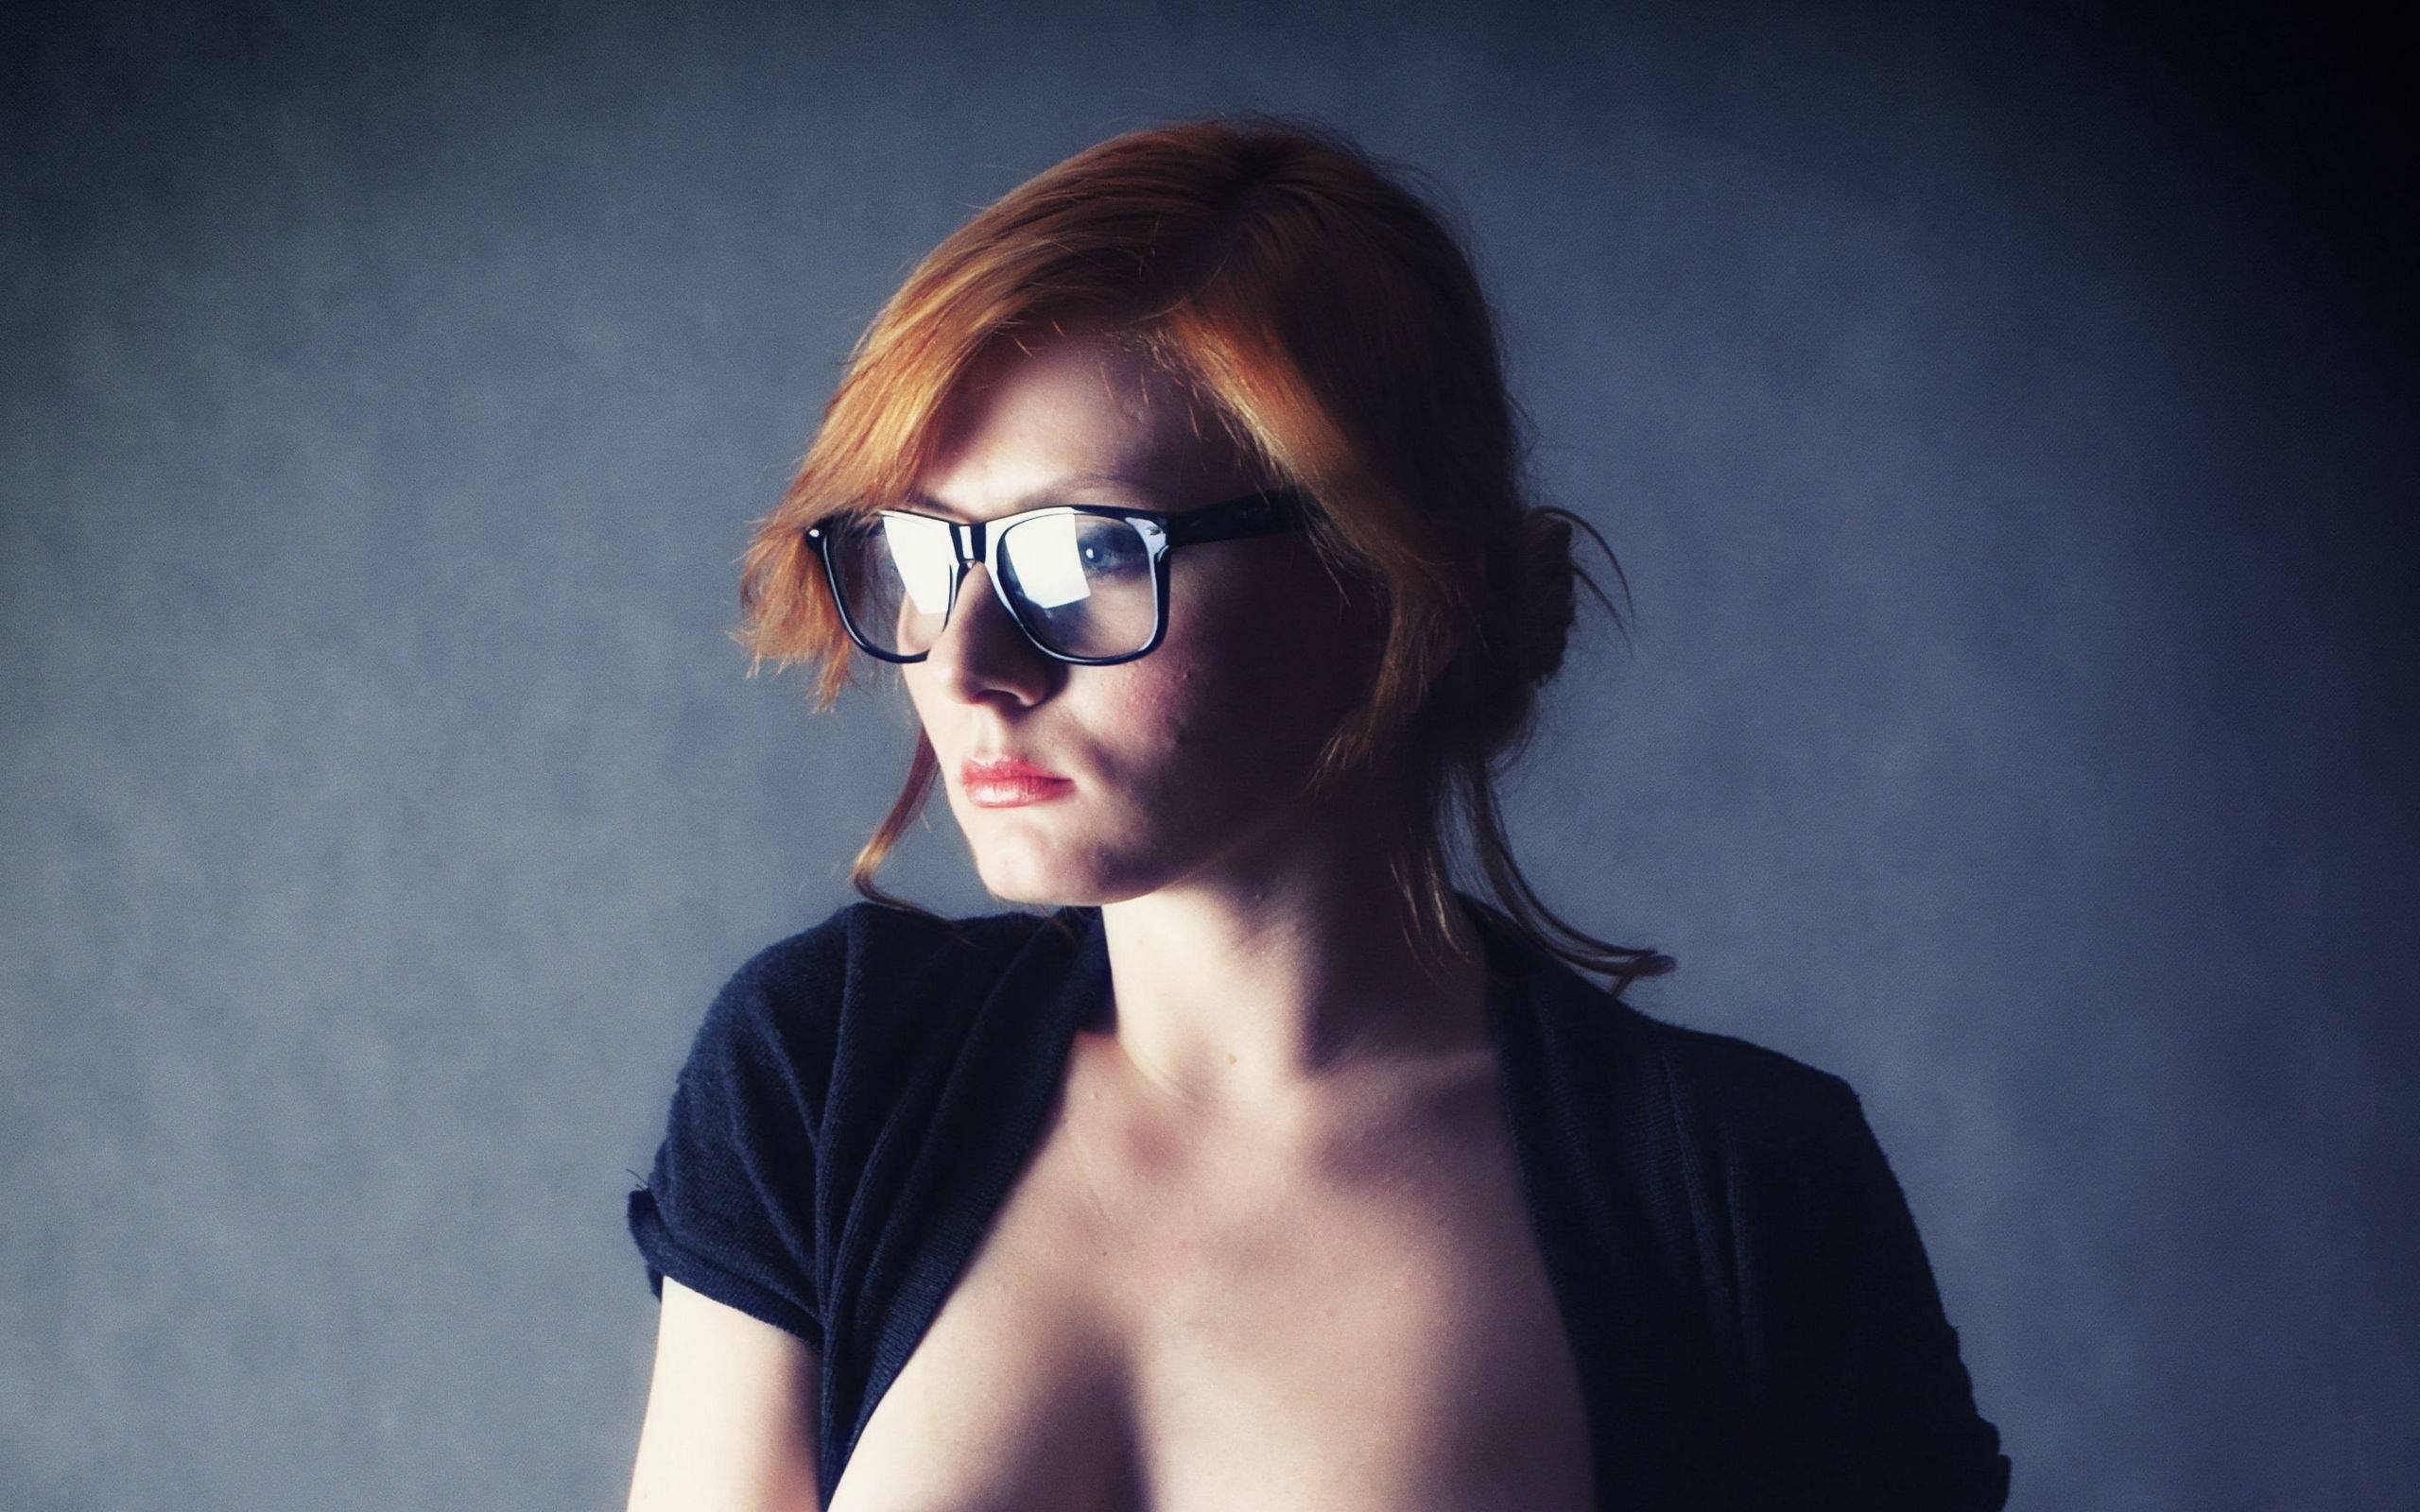 Подборка сексуальных девушек в очках 22 фотографии